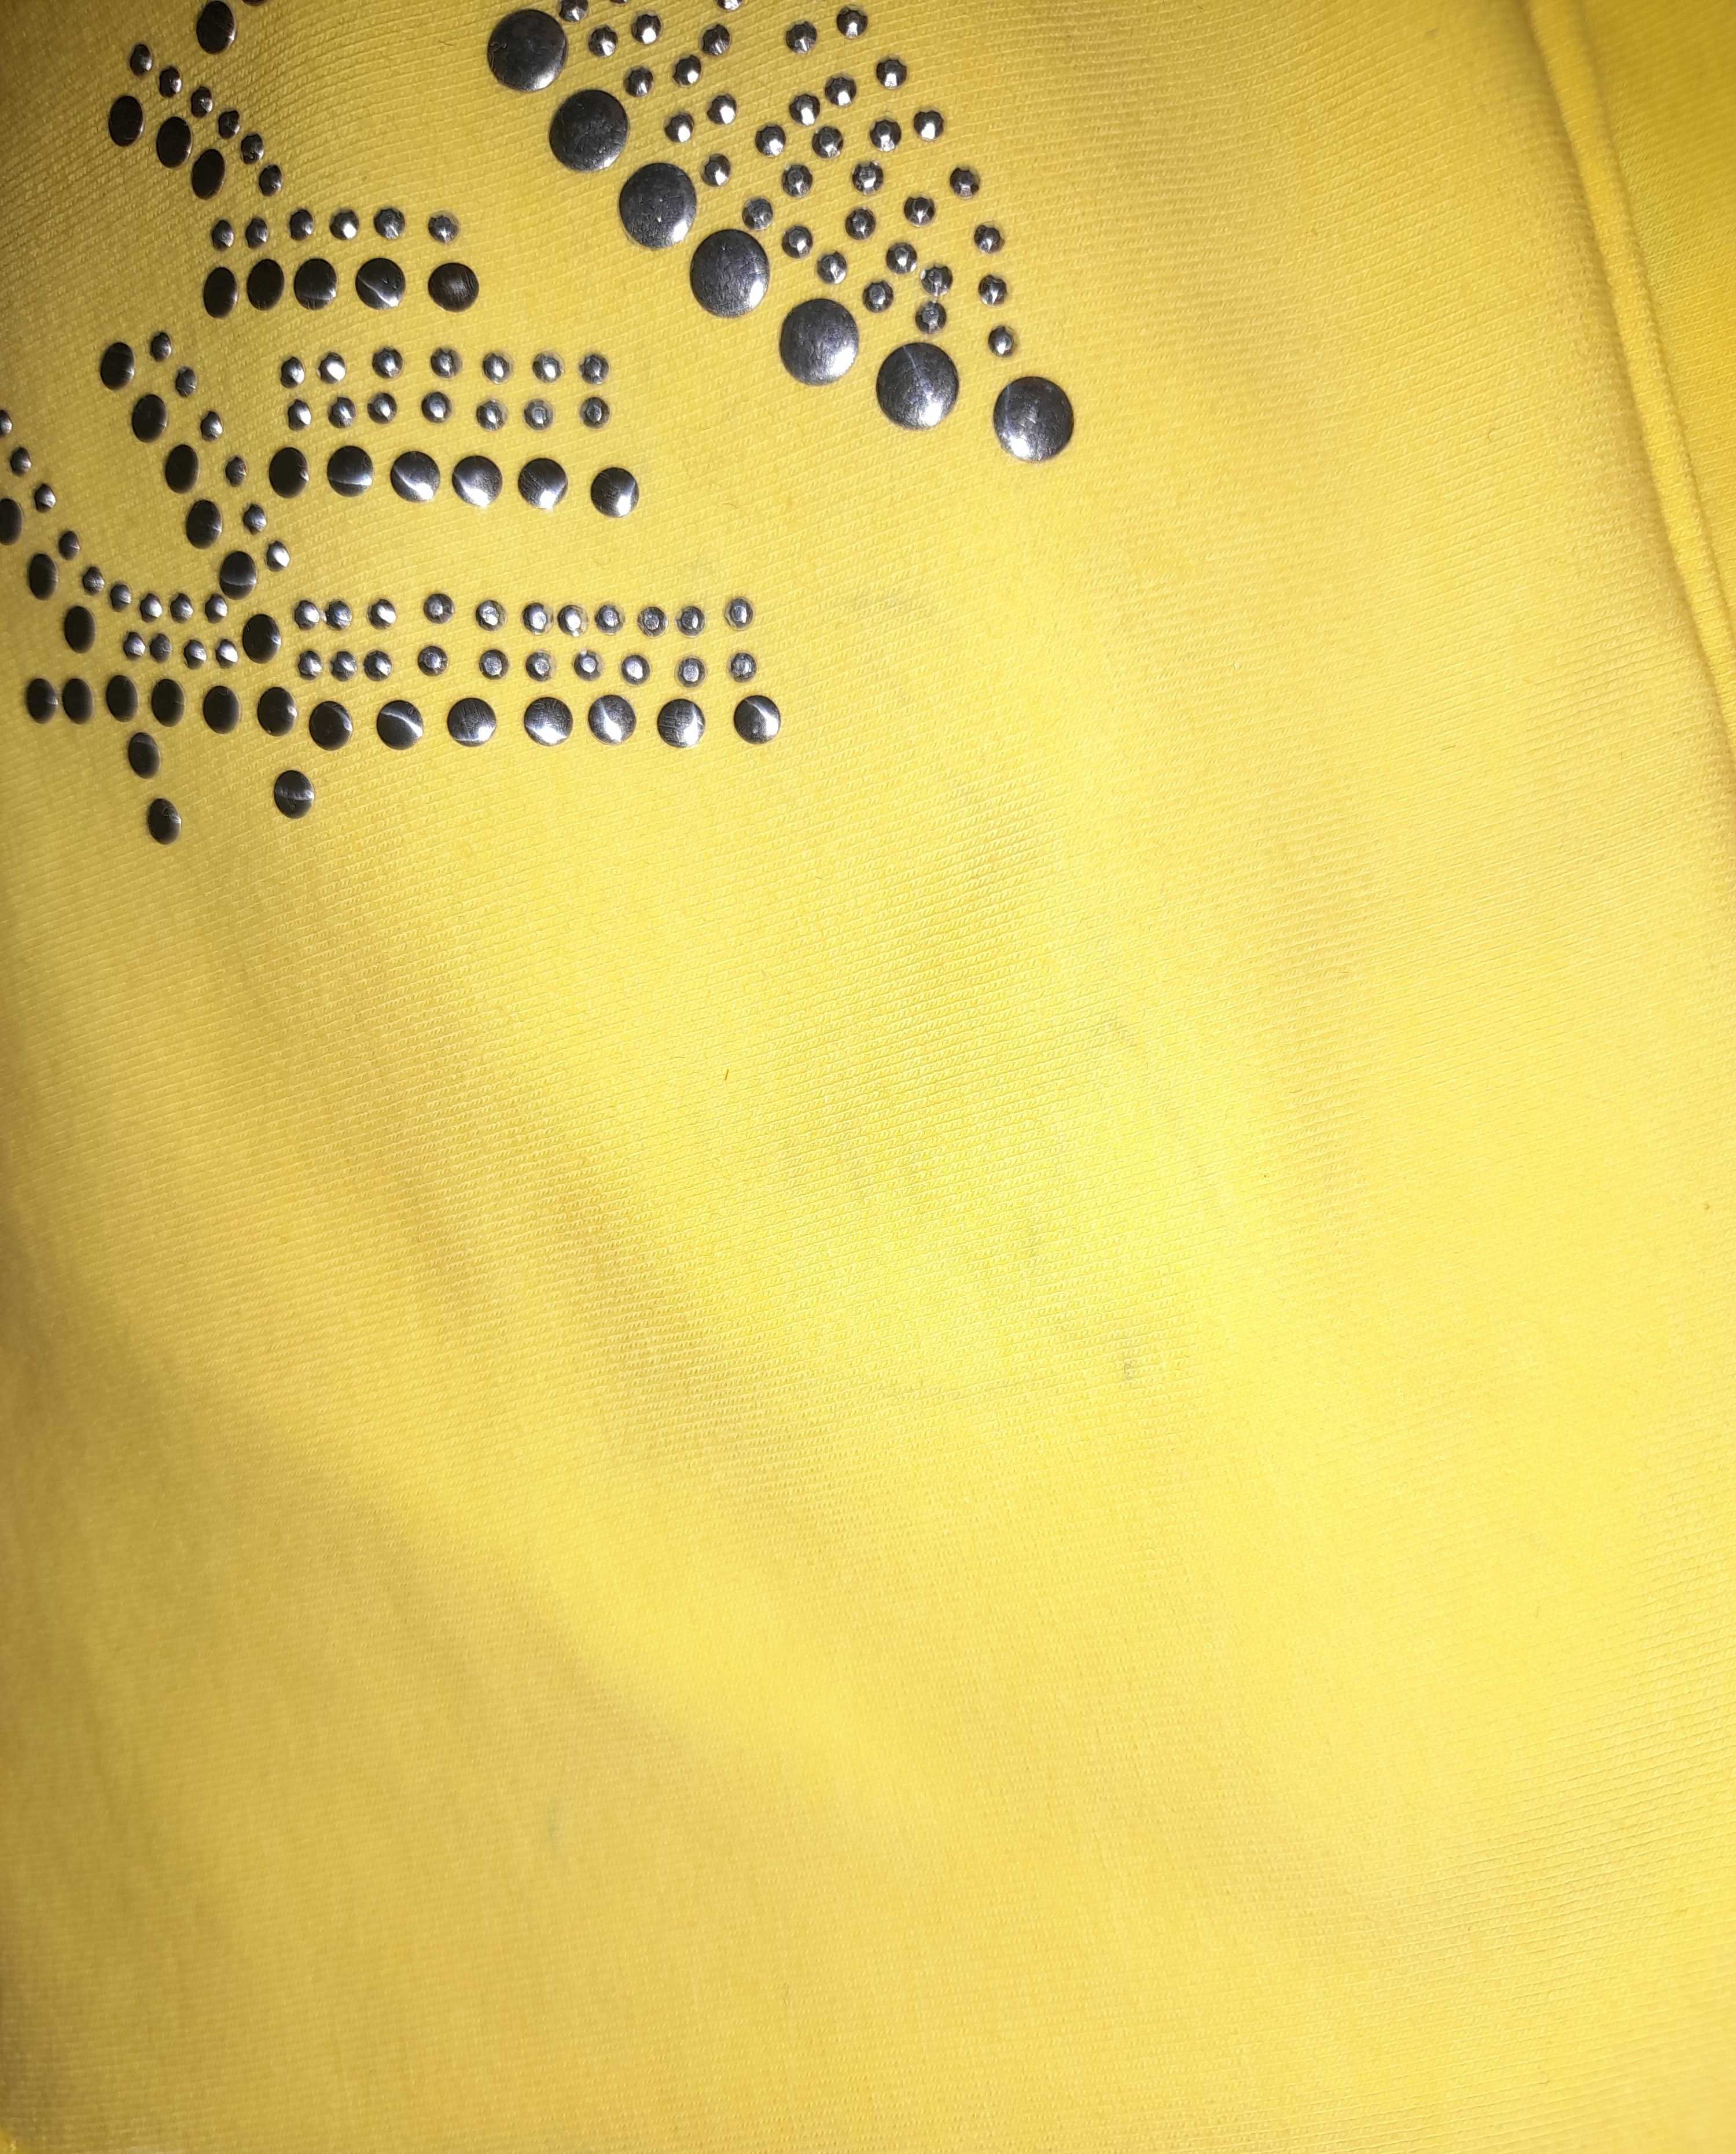 Cytrynowa bluzka z kapturem cała w cyrkoniach